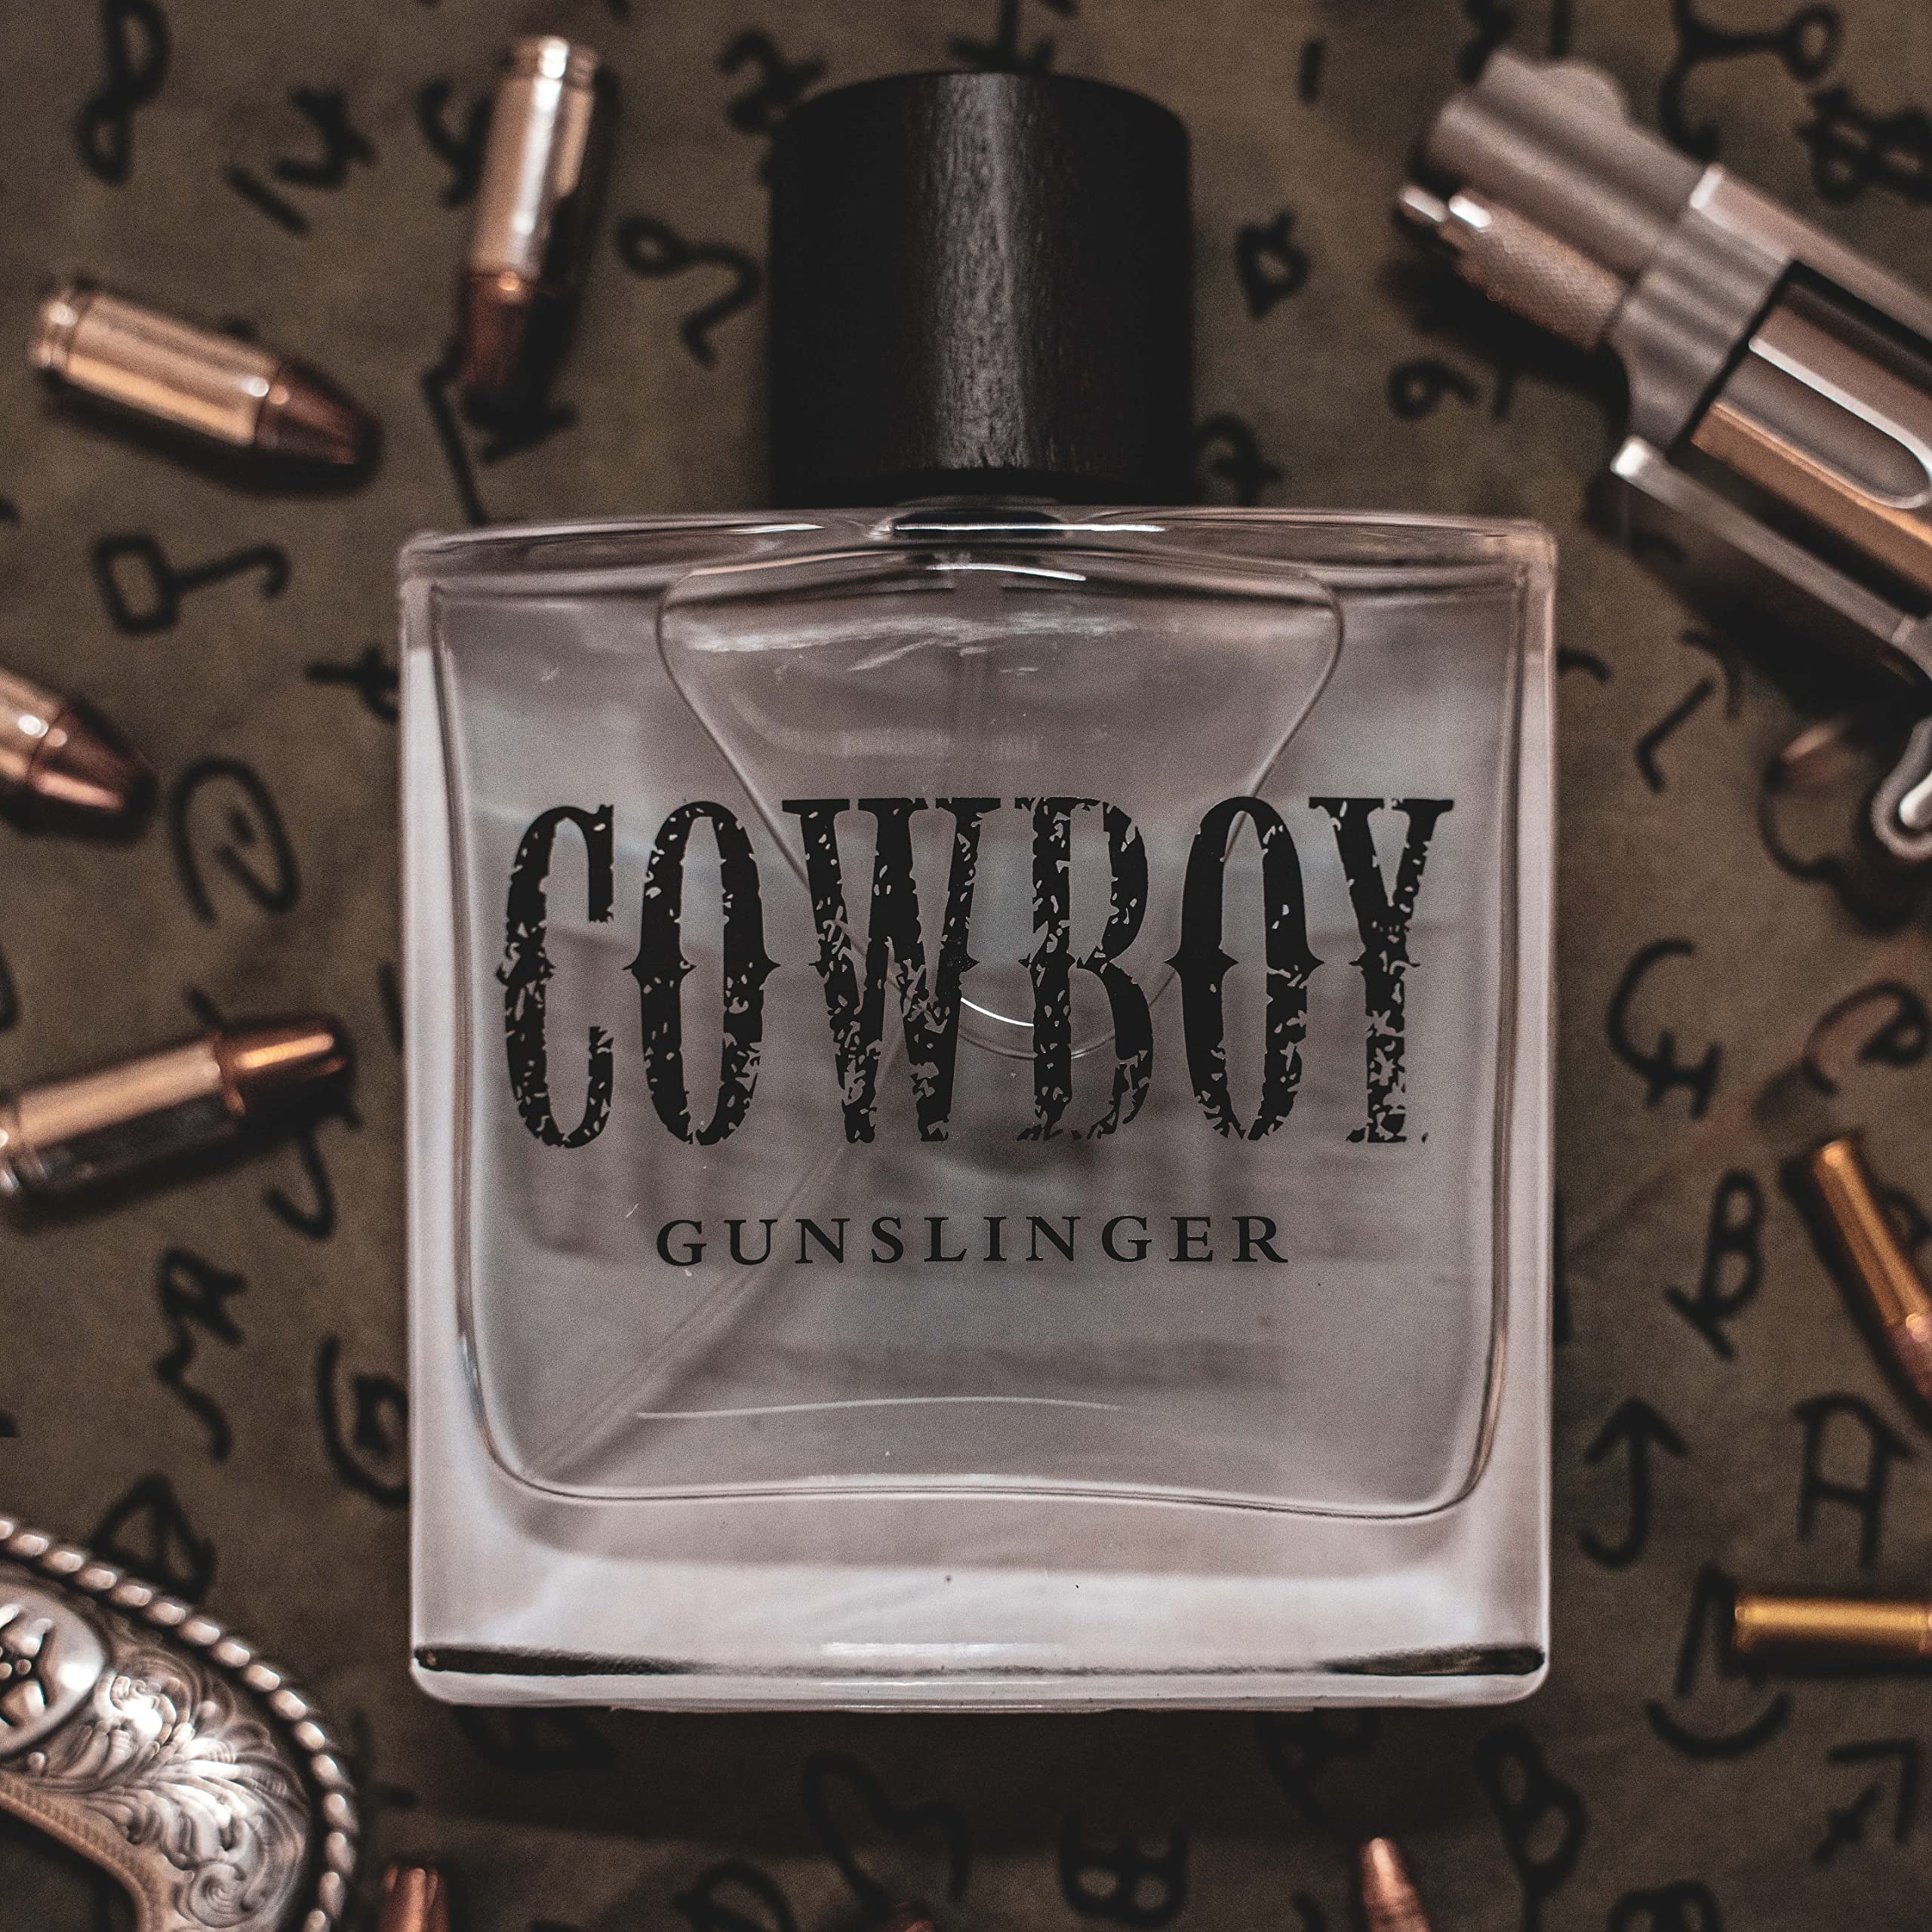 Tru Western Cowboy Gunslinger Men's Cologne, 3.4 fl oz (100 ml) - Warm, Fresh, Bold